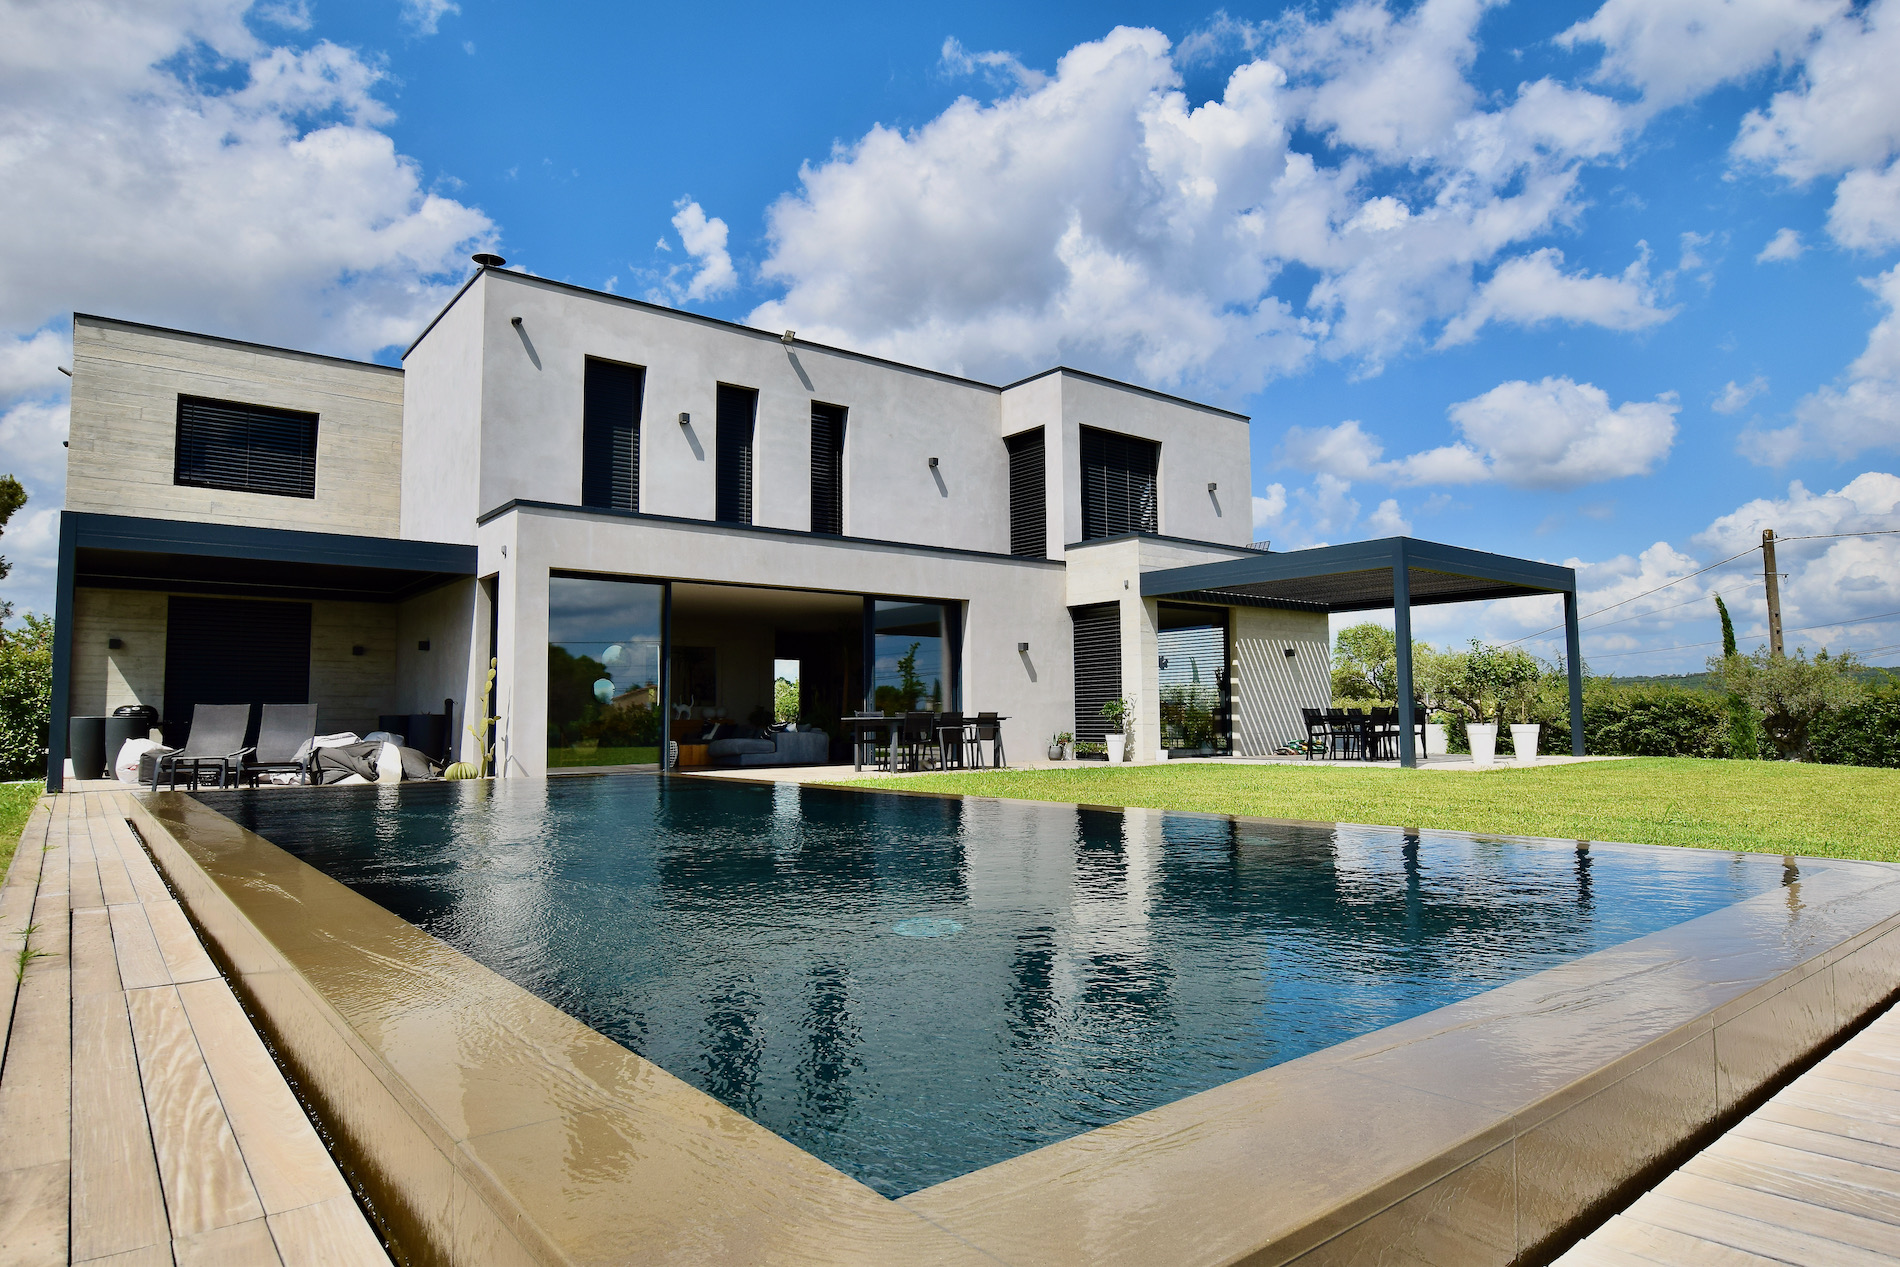 78435:  Uzès, fabuleuse propriété contemporaine, 400 m² habitables sur 3000 m² parc clos avec piscine miroir, vue dégagé